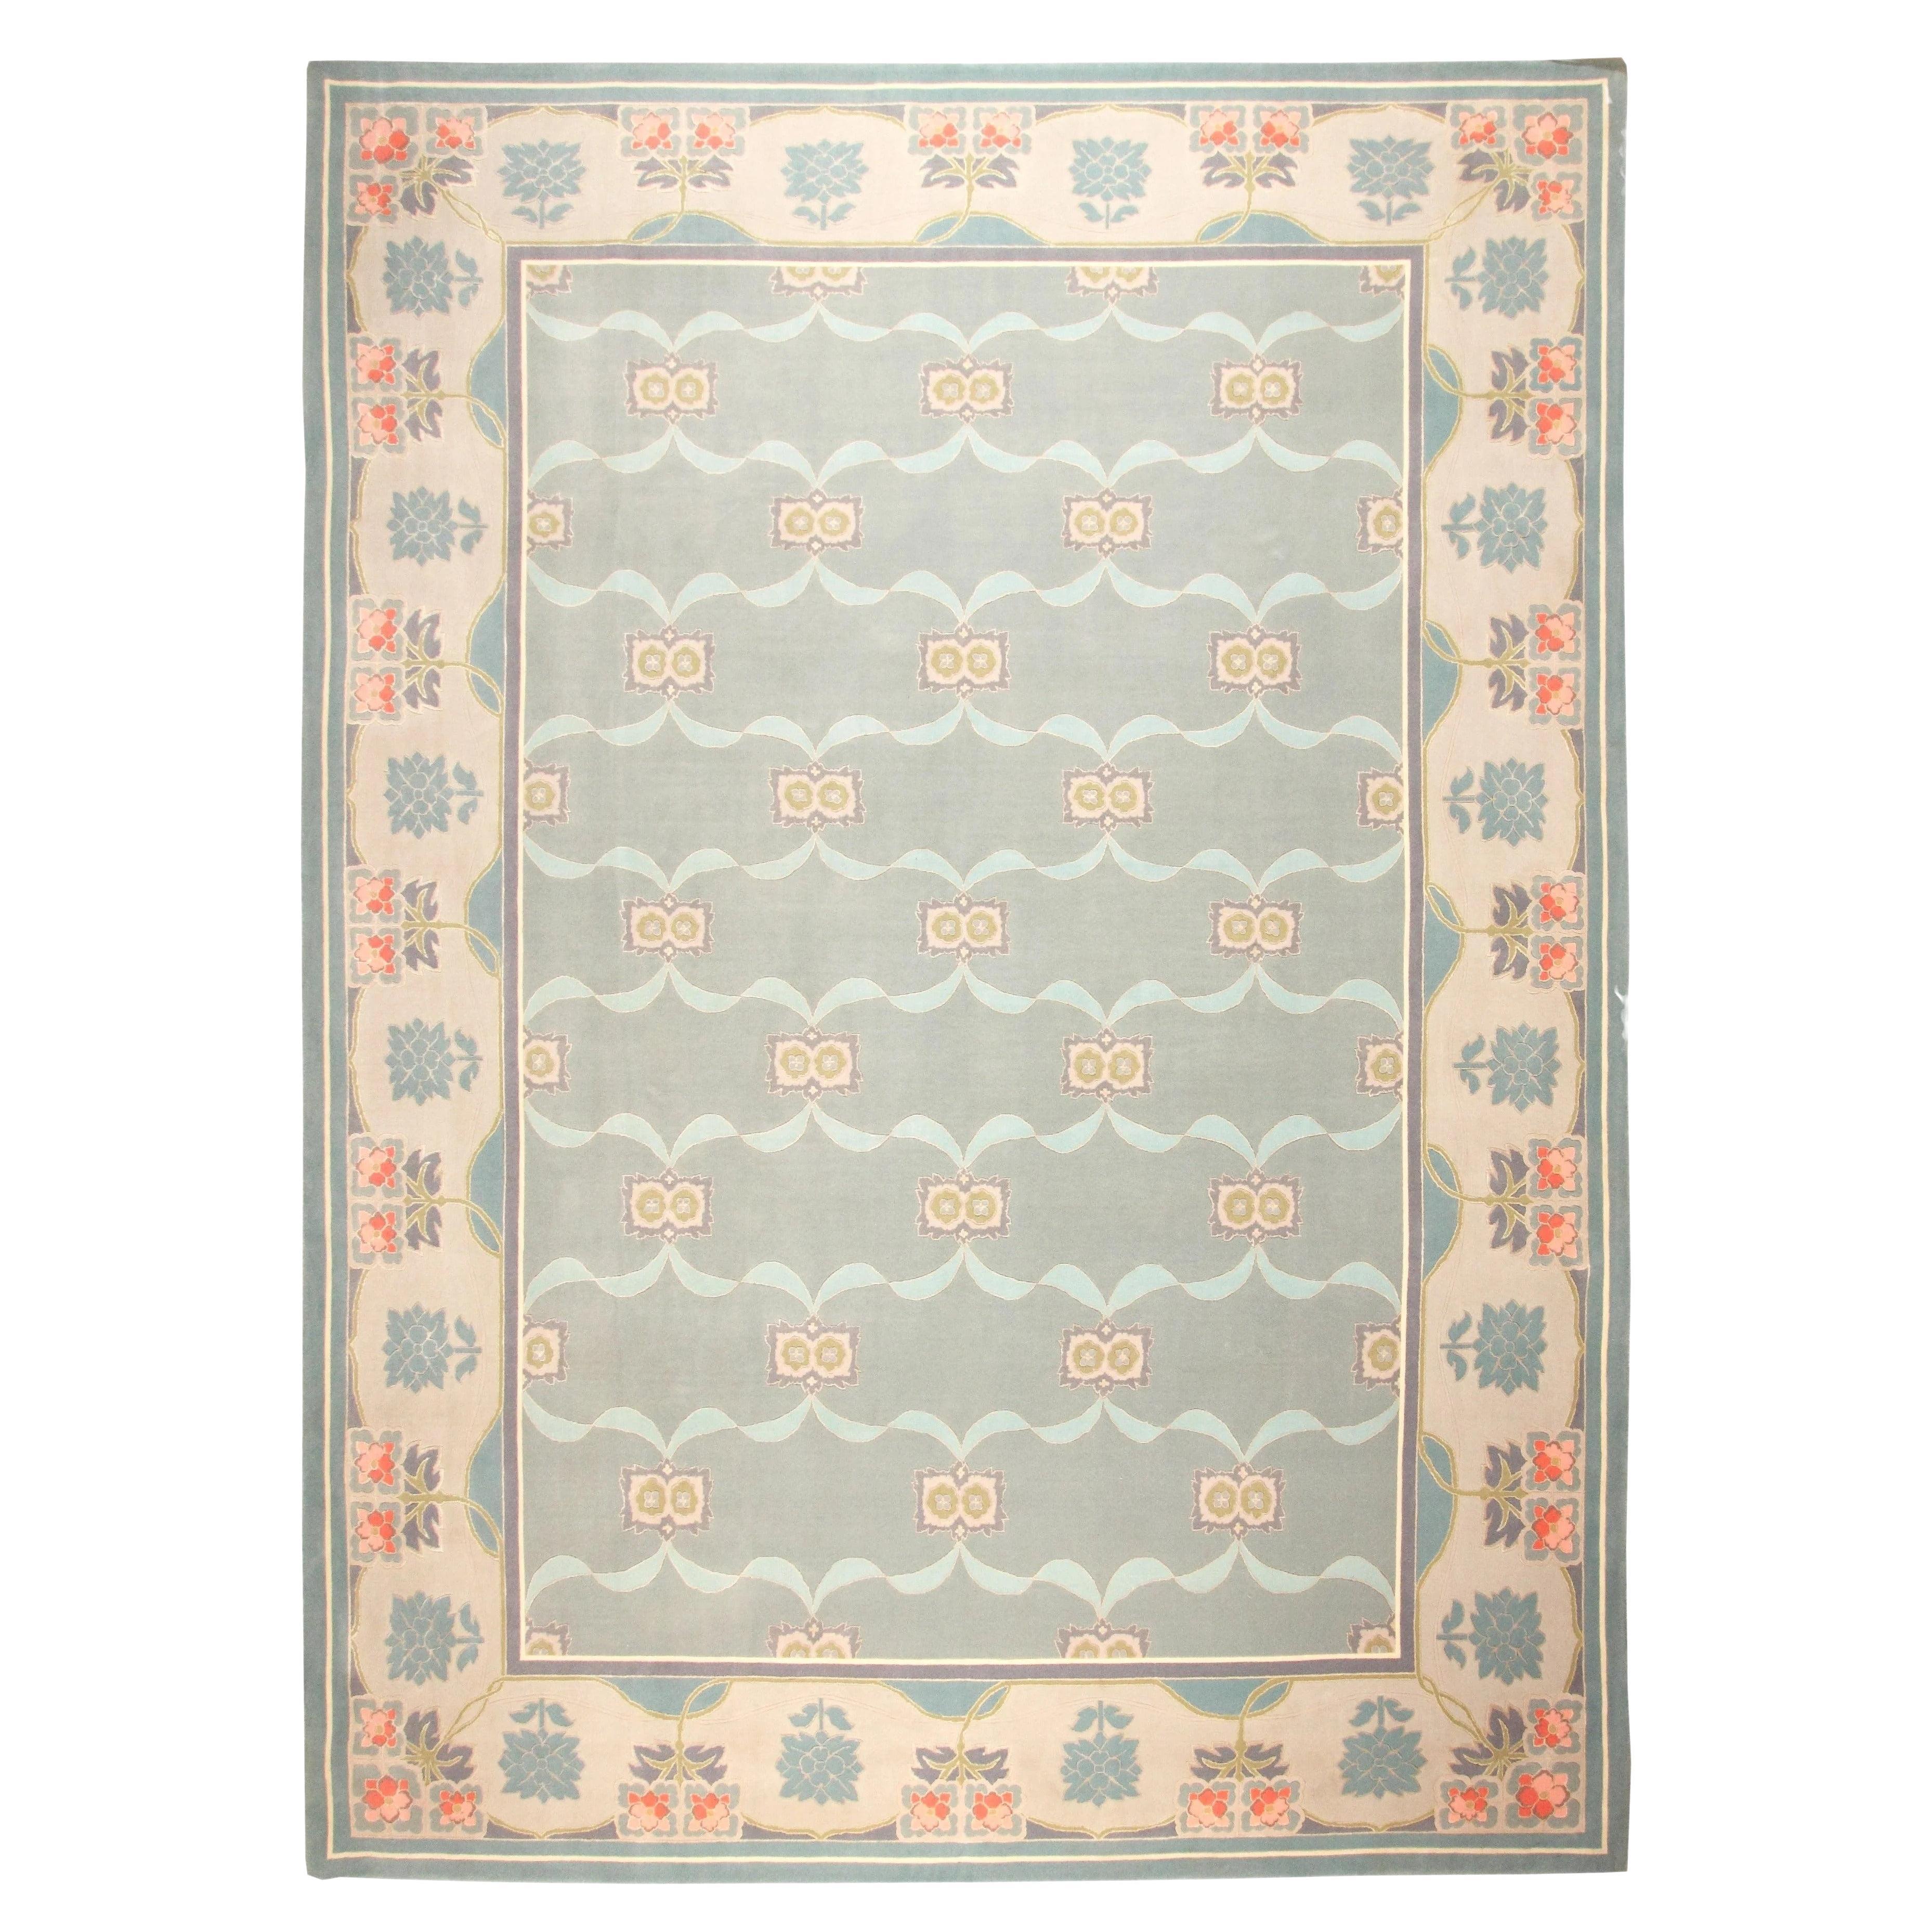 VIA COMO 'Detalier' Rug Hand Knotted Wool Silk Carpet 10x14 Rare One of a kind